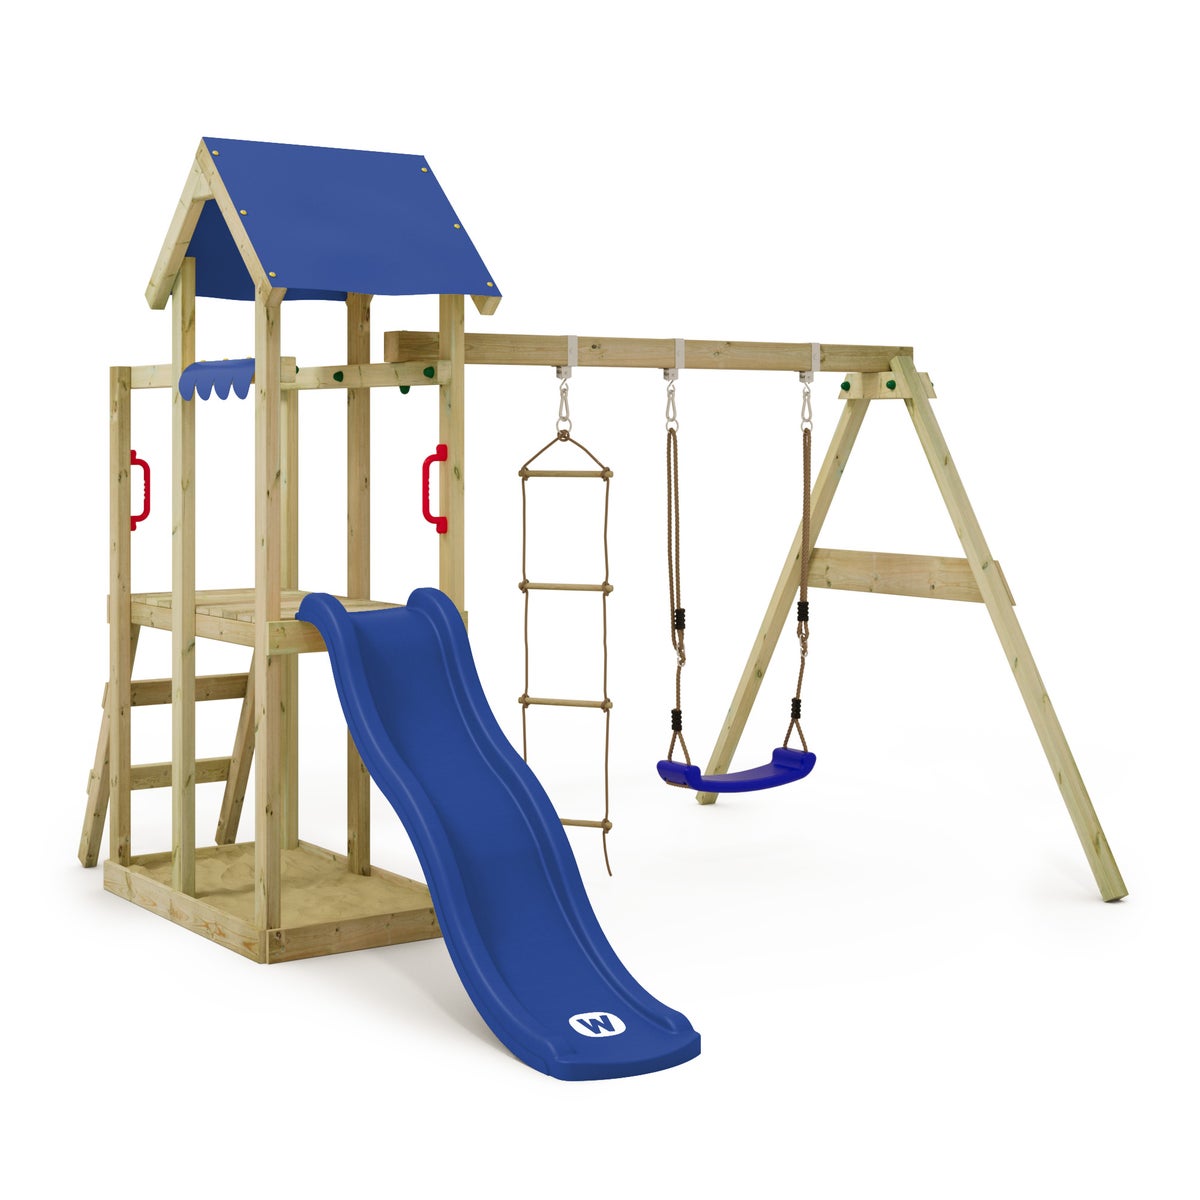 WICKEY Spielturm Klettergerüst TinyPlace mit Schaukel und Rutsche, Kletterturm mit Sandkasten, Leiter und Spiel-Zubehör - blau